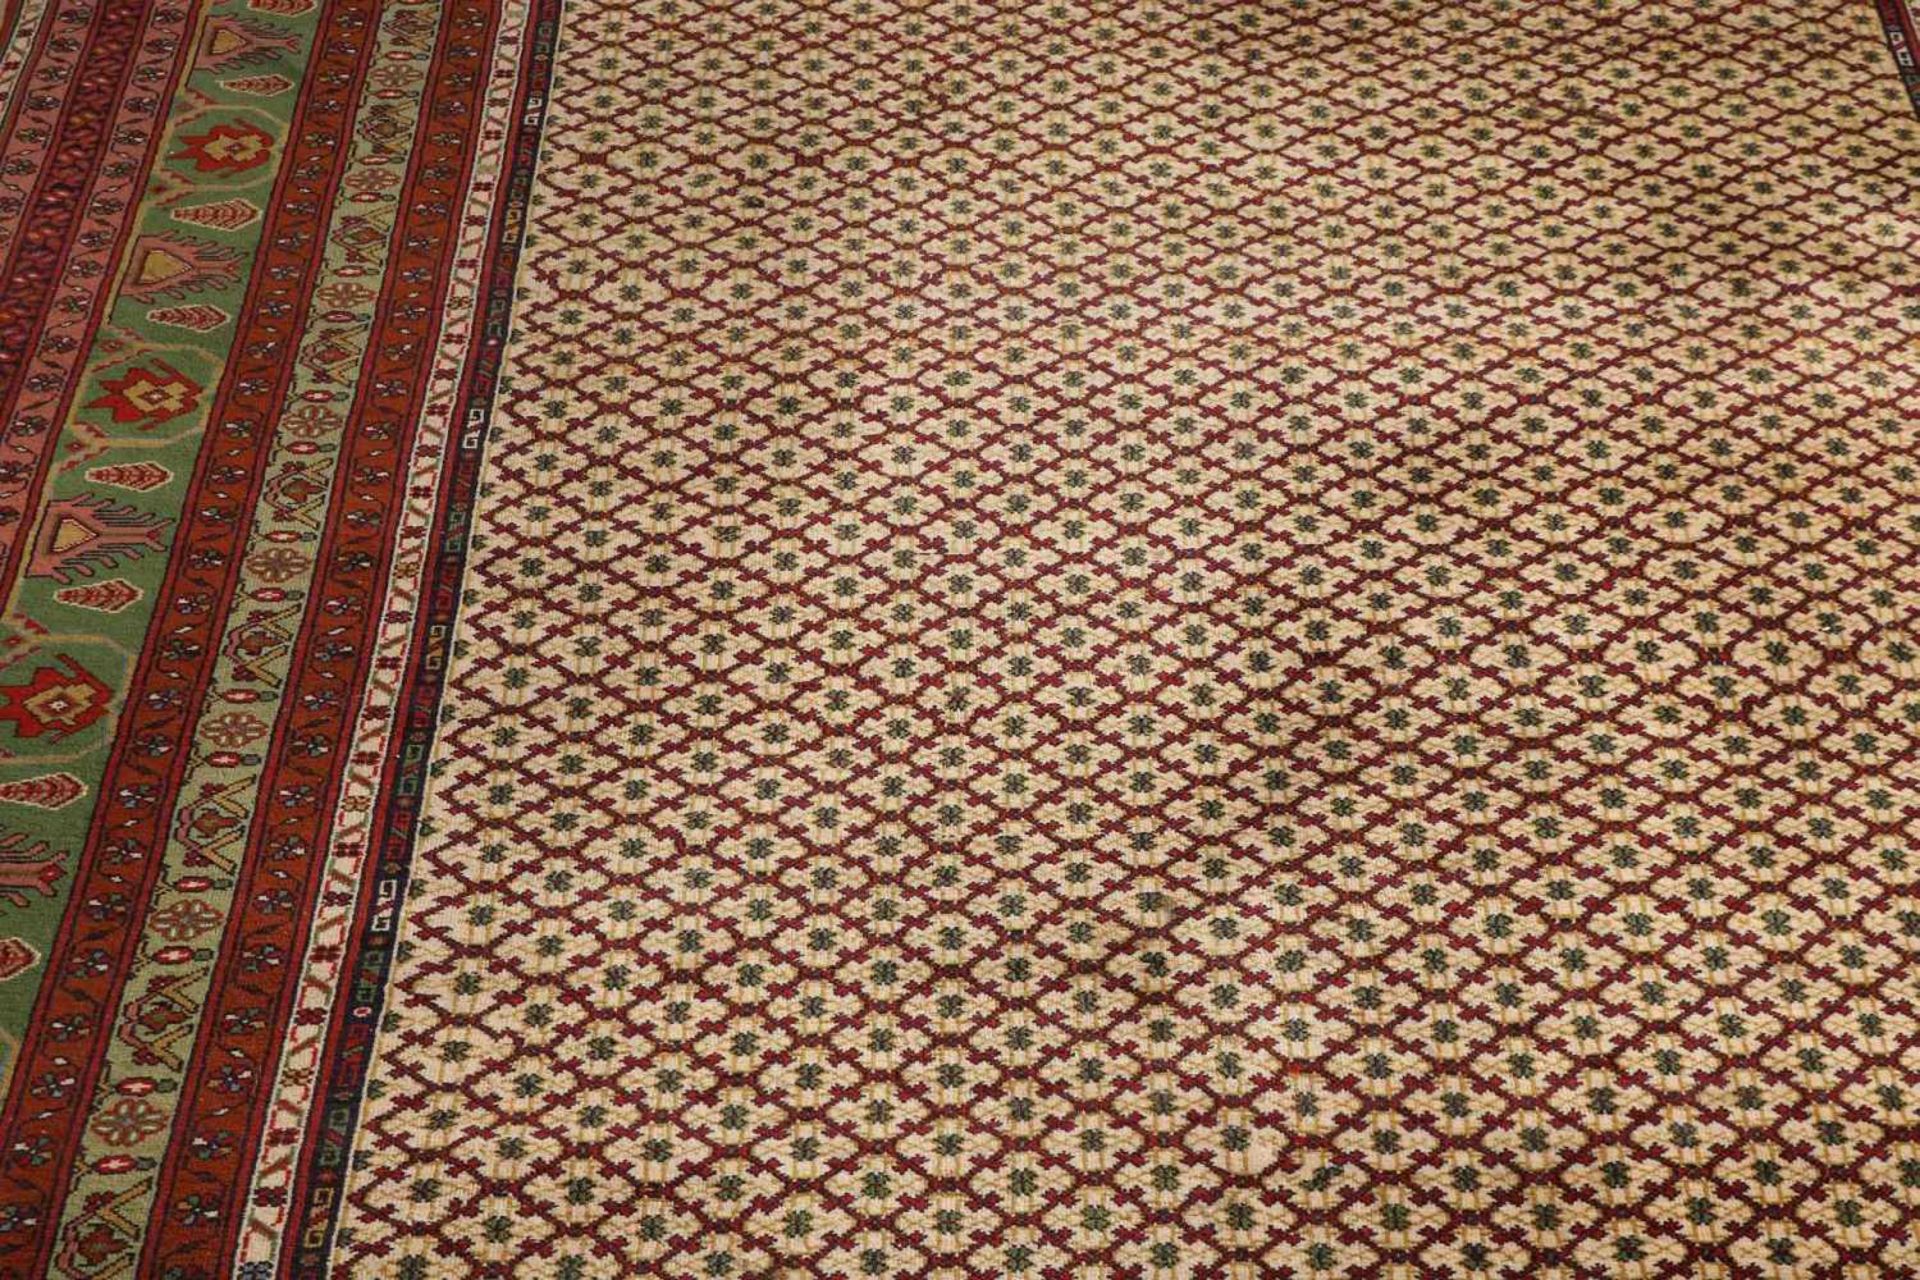 Großer alter persischer Kundus Teppich mit Blumendekor. Natürliche Erdtöne. Größe: 305 x 195 - Image 2 of 3